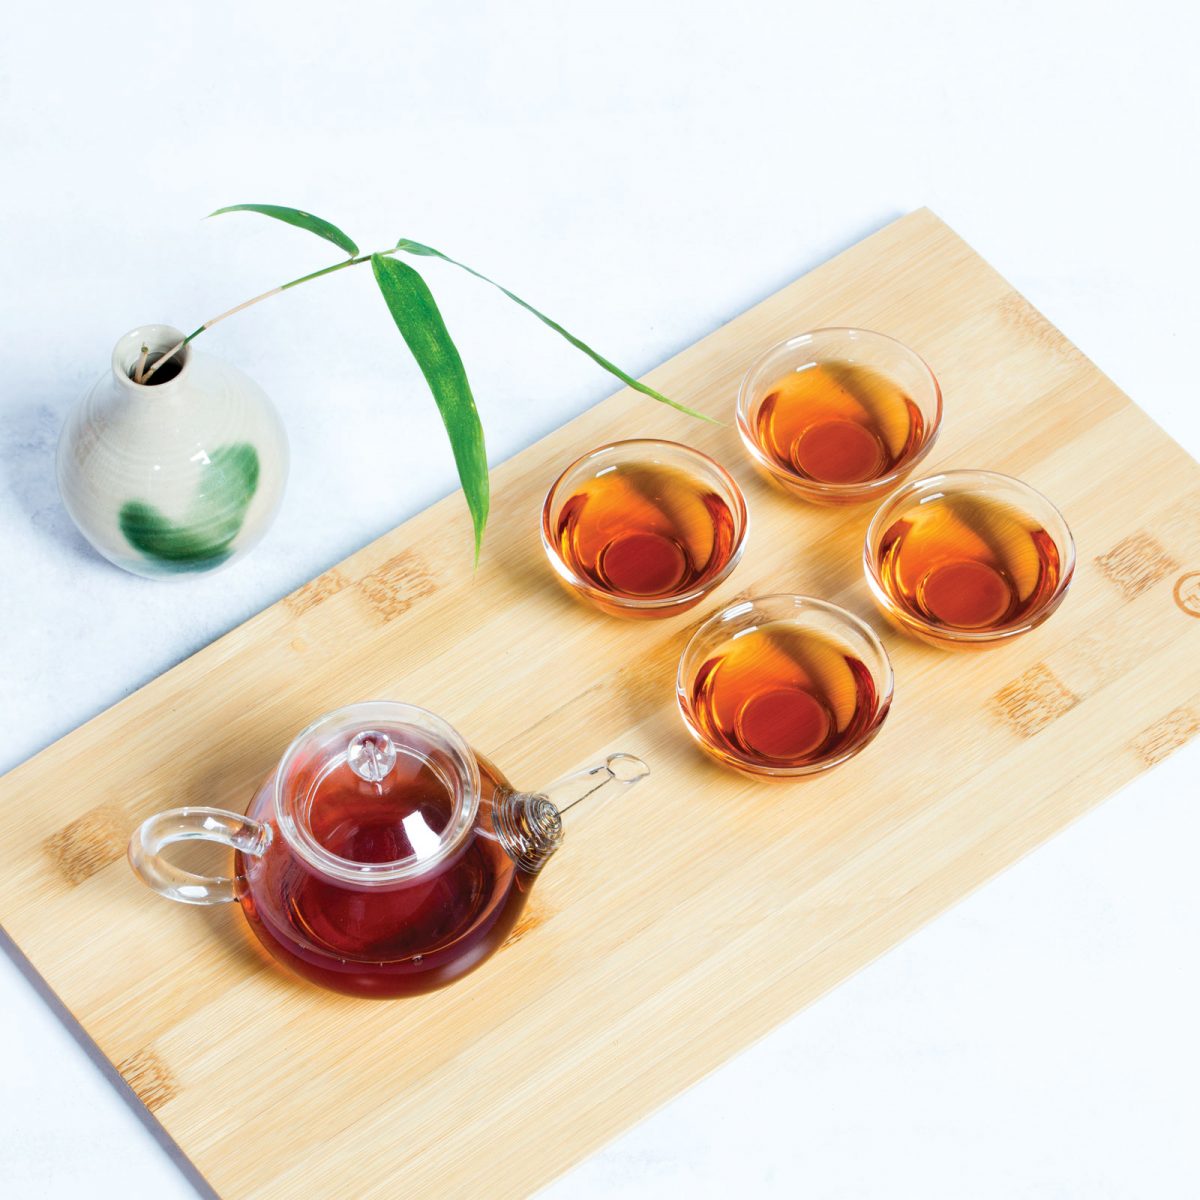 Ha Giang black tea with glass teaset